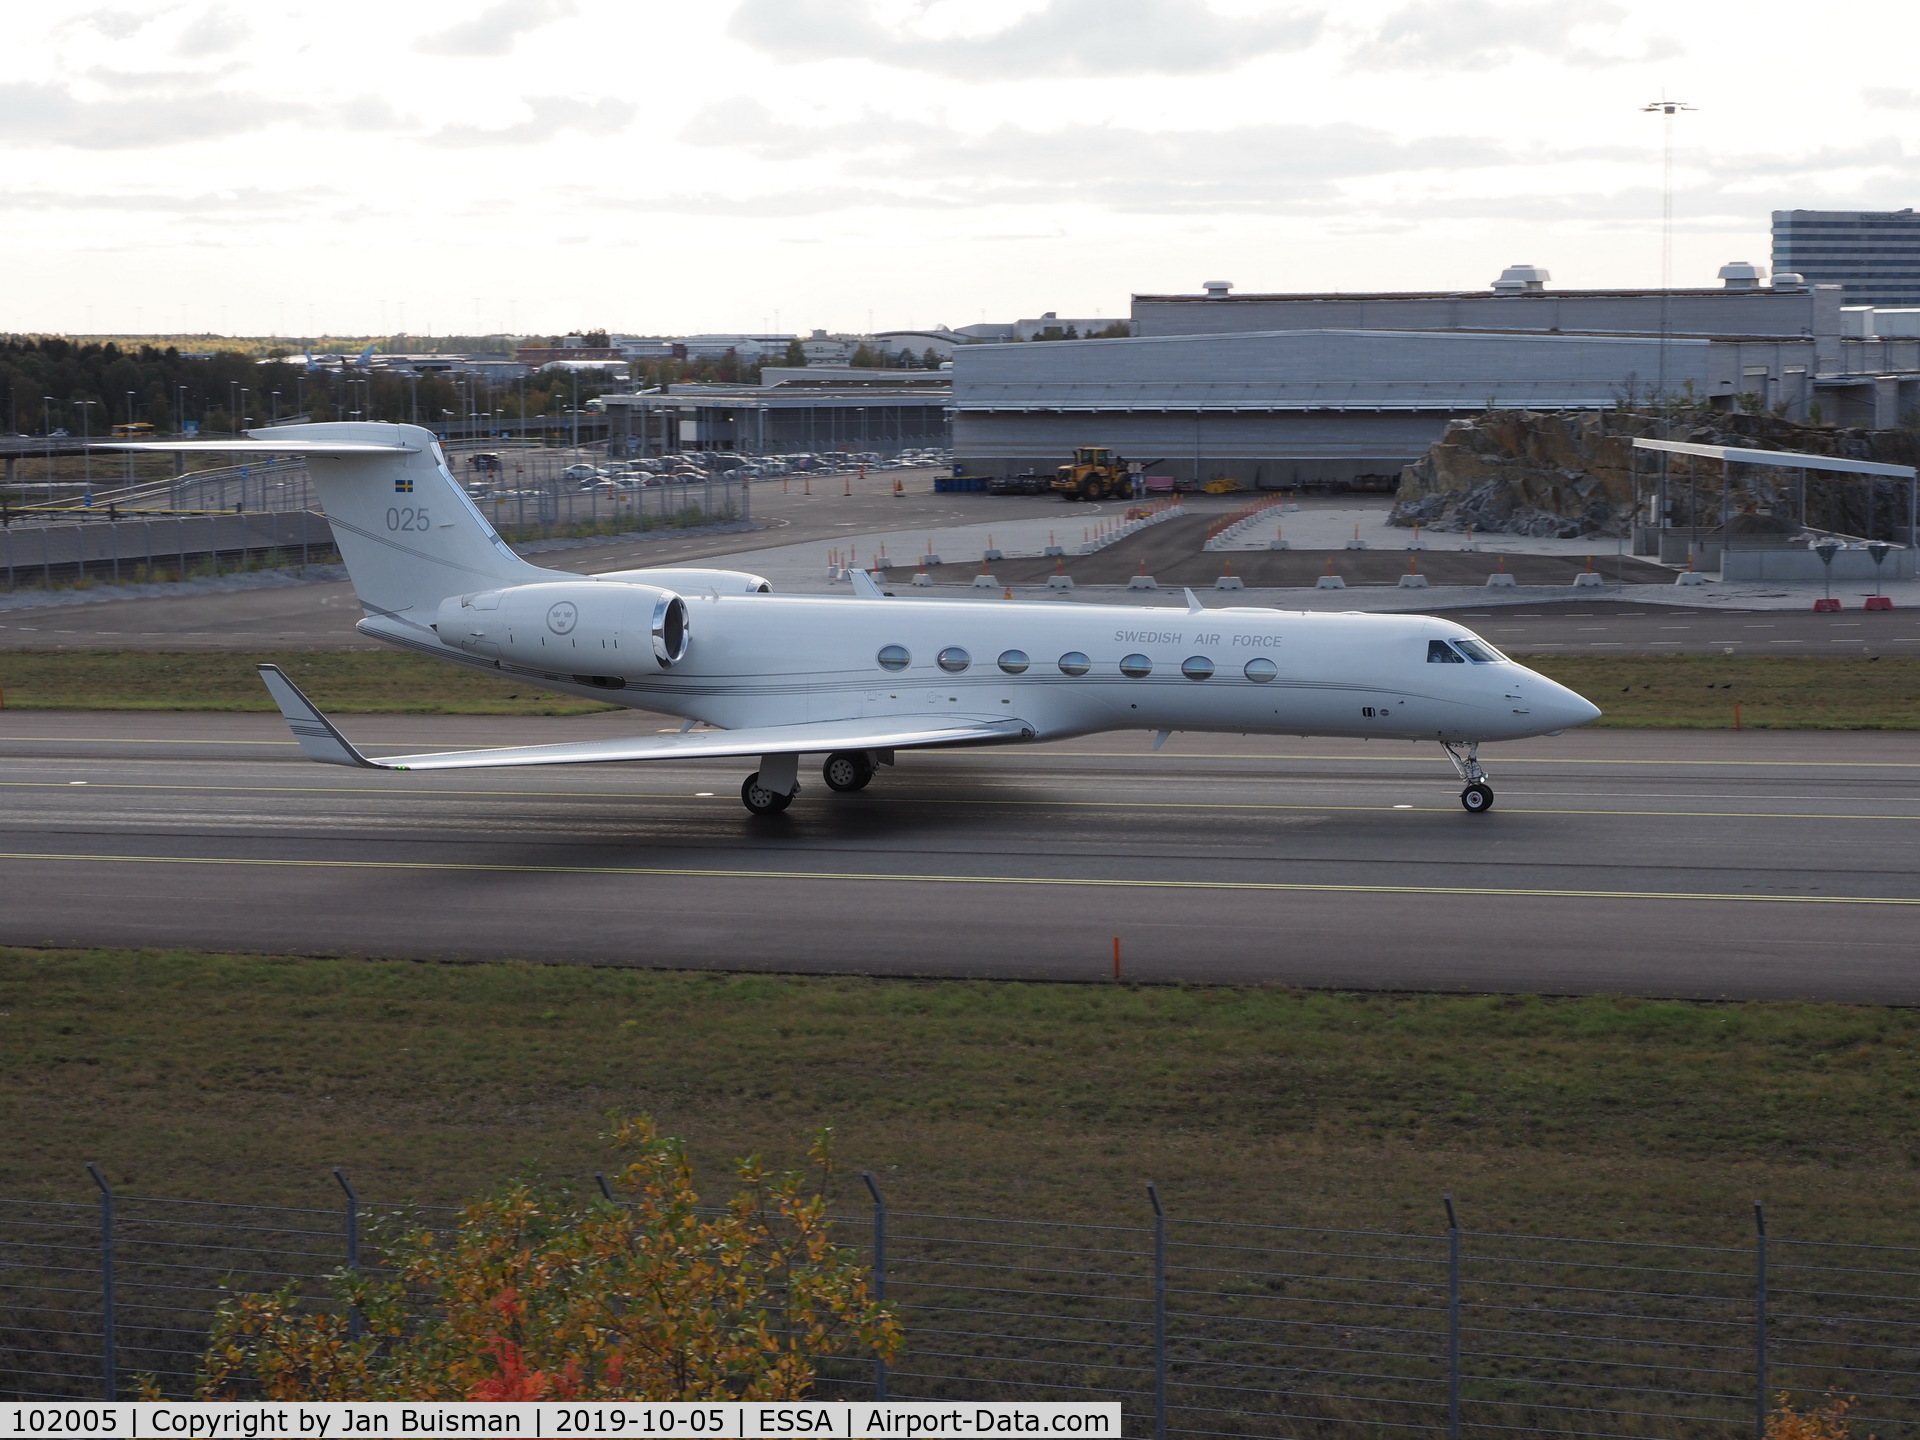 102005, 2008 Gulfstream Aerospace GV-SP (G550) C/N 5200, Swedish Air Force